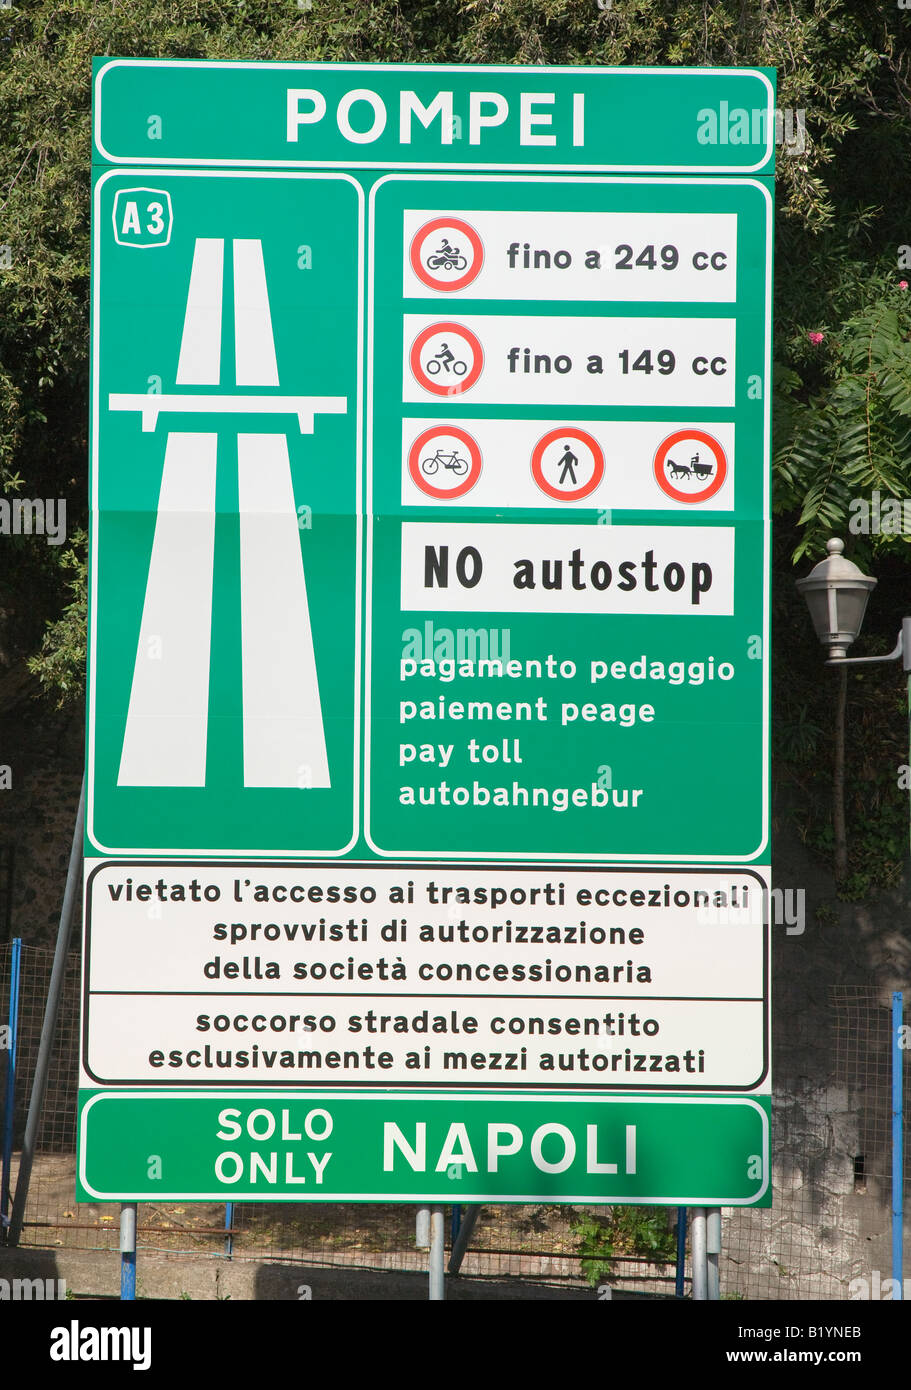 Pompei motorway sign Pompeii Campania Italy Stock Photo